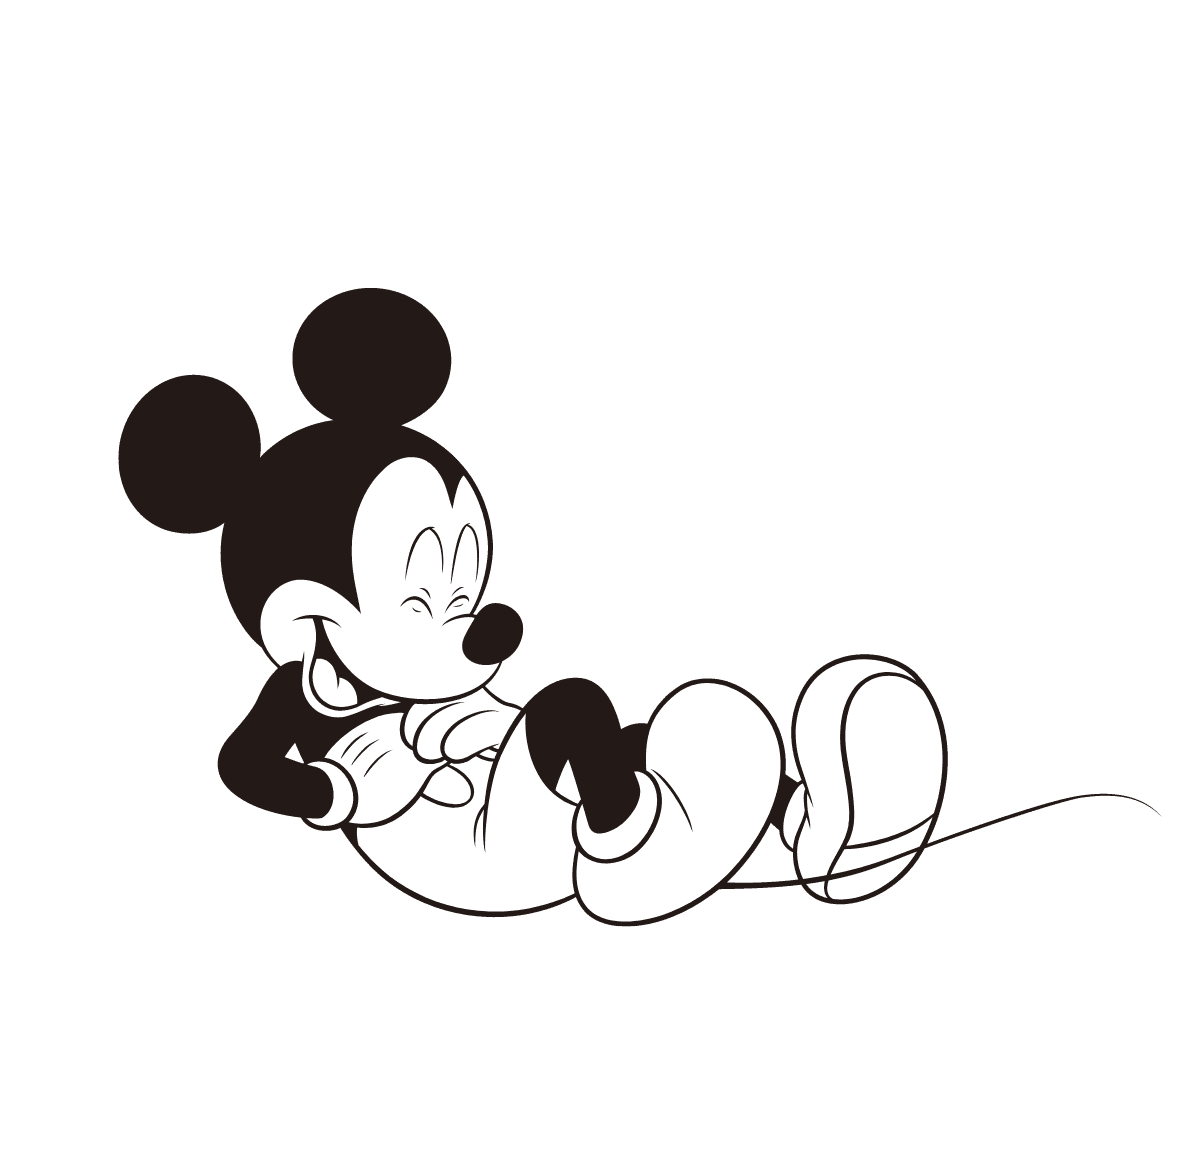 GIF animé de Mickey Mouse levant la tête, de dos, puis se retournant et dansant joyeusement.